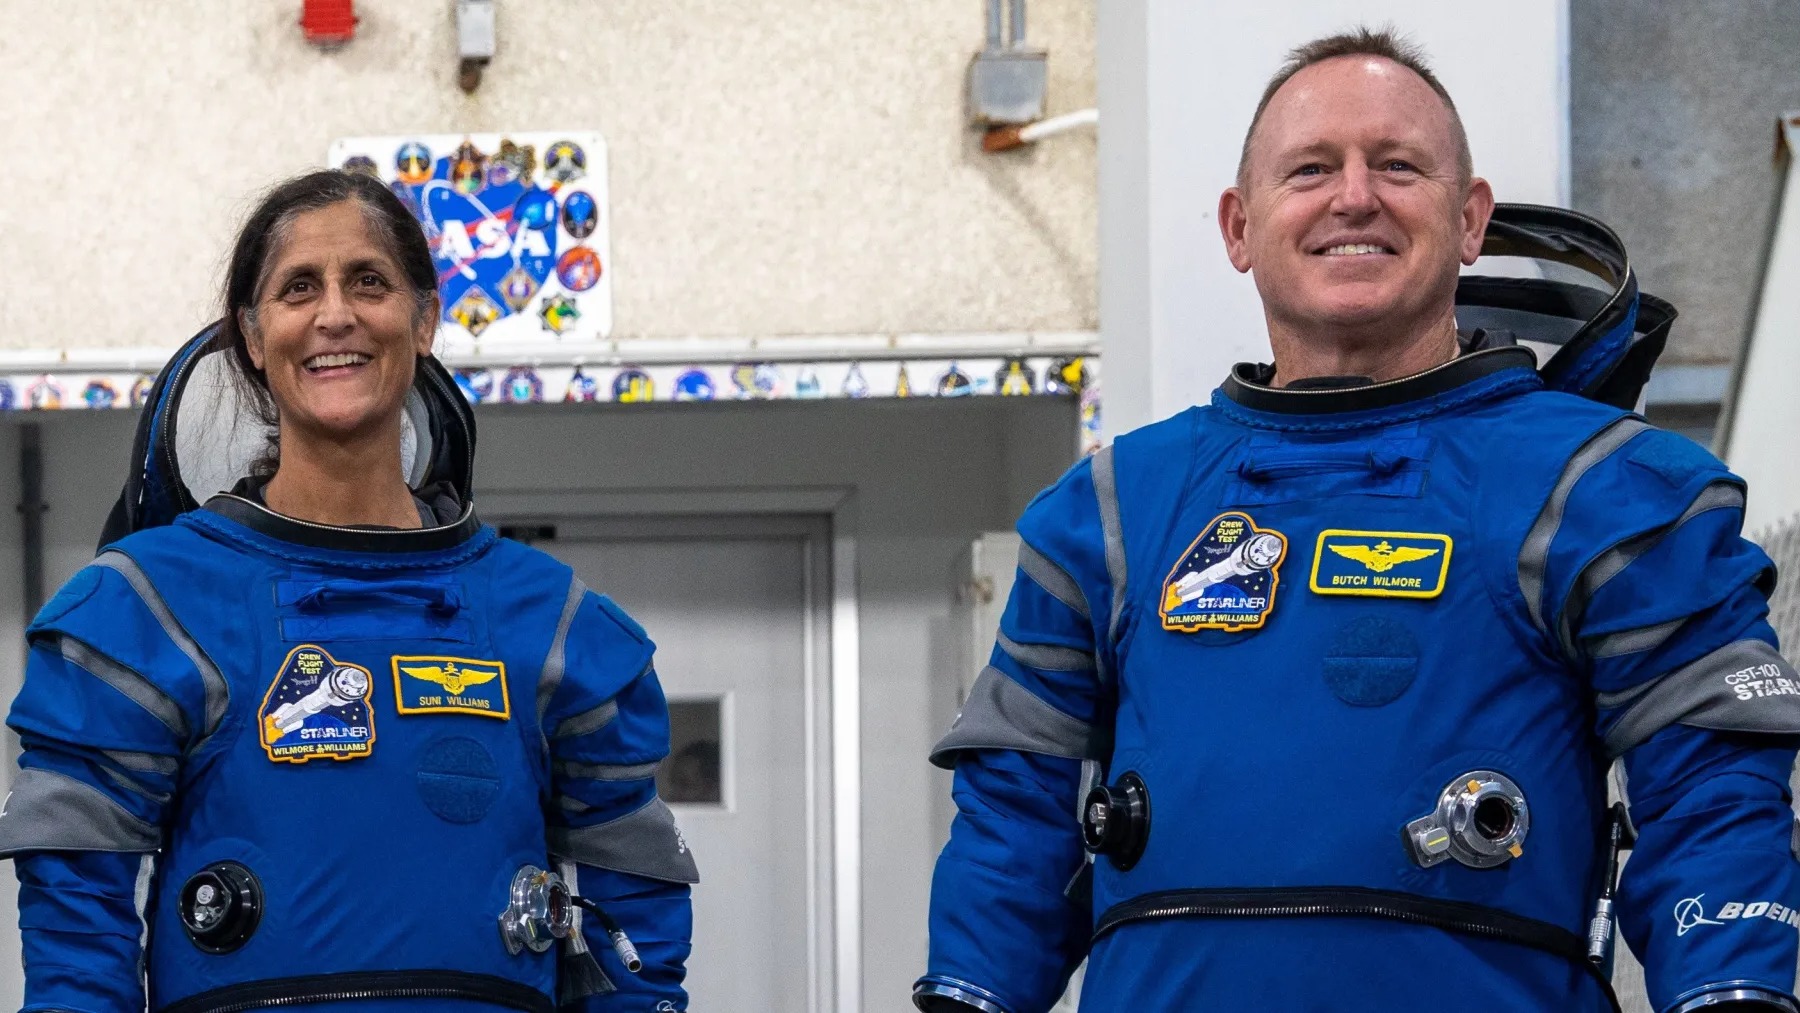 دو فضانورد با لباس فضایی ایستاده و لبخند می زنند